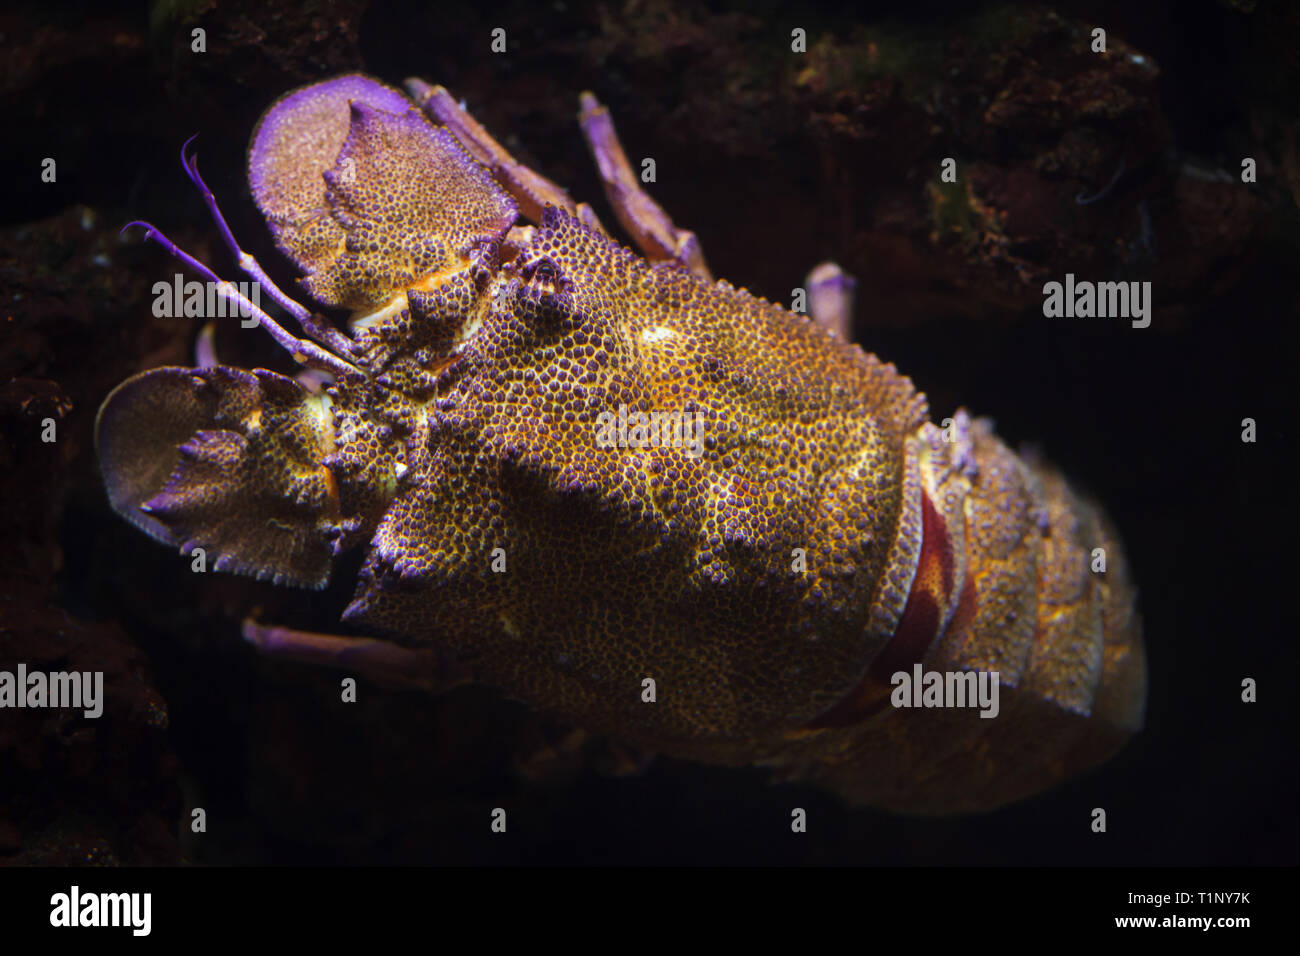 Mediterranean slipper lobster (Scyllarides latus), also known as the Mediterranean locust lobster. Stock Photo